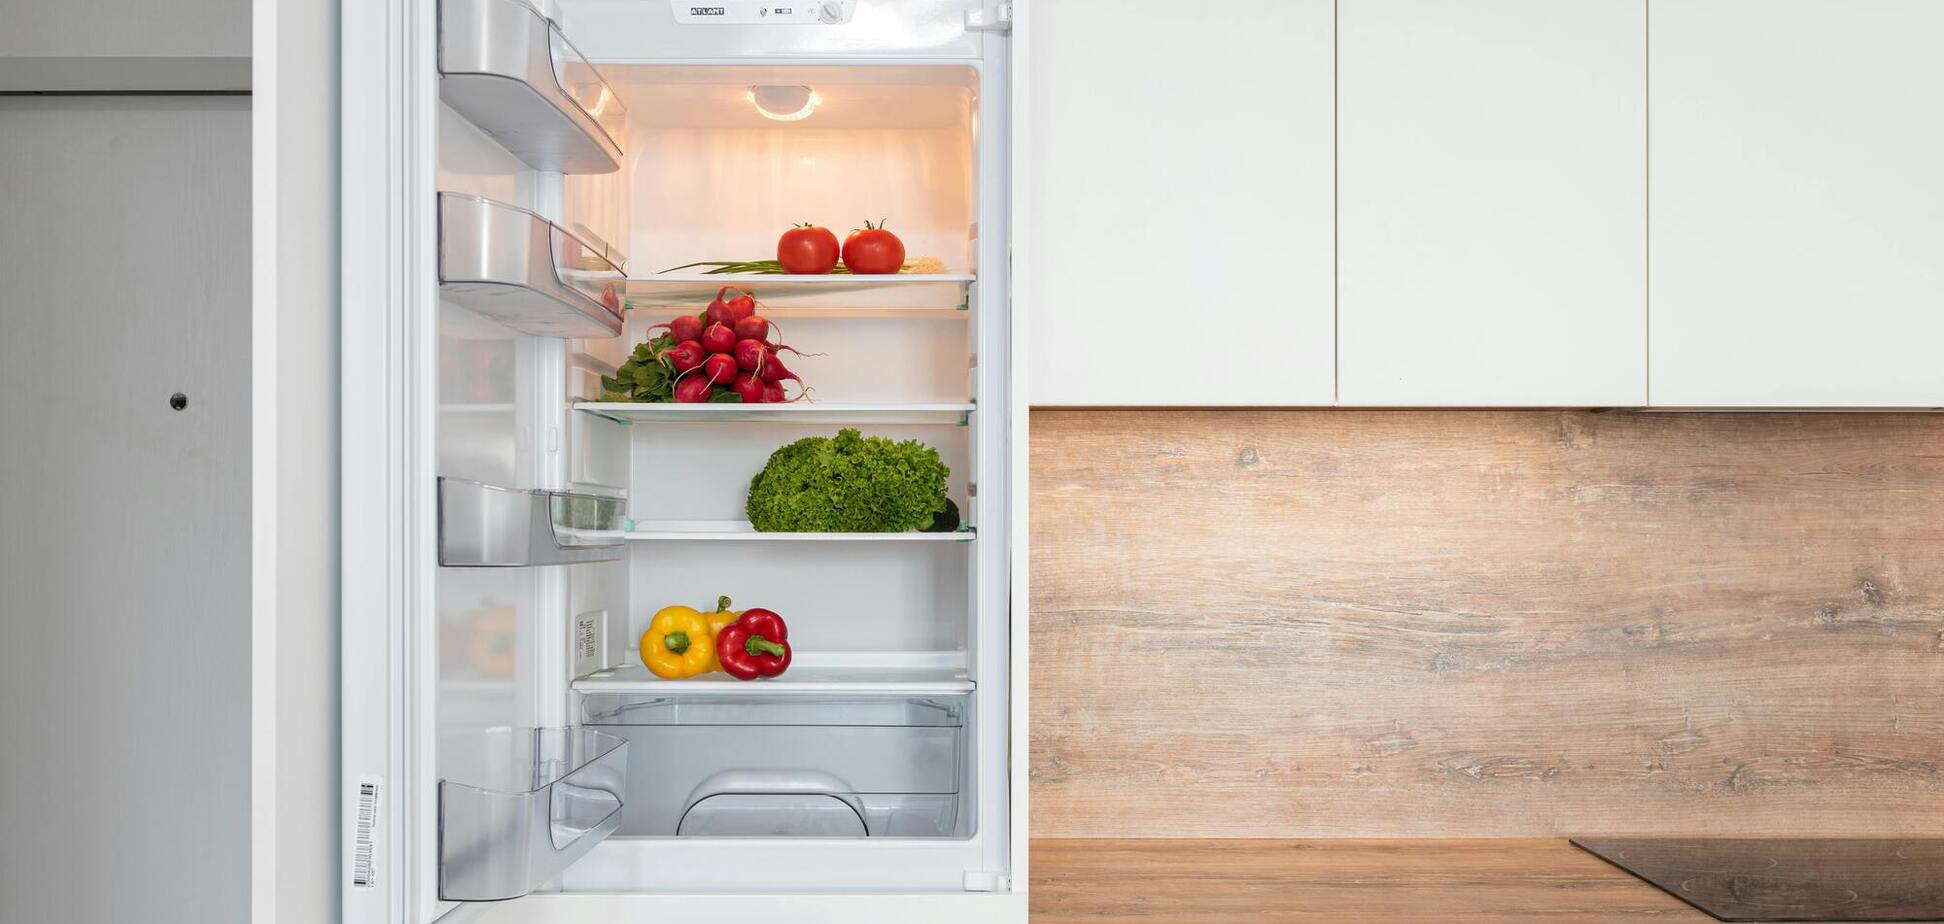 Безопасно ли есть блюда прямо из холодильника: детали употребления холодных продуктов